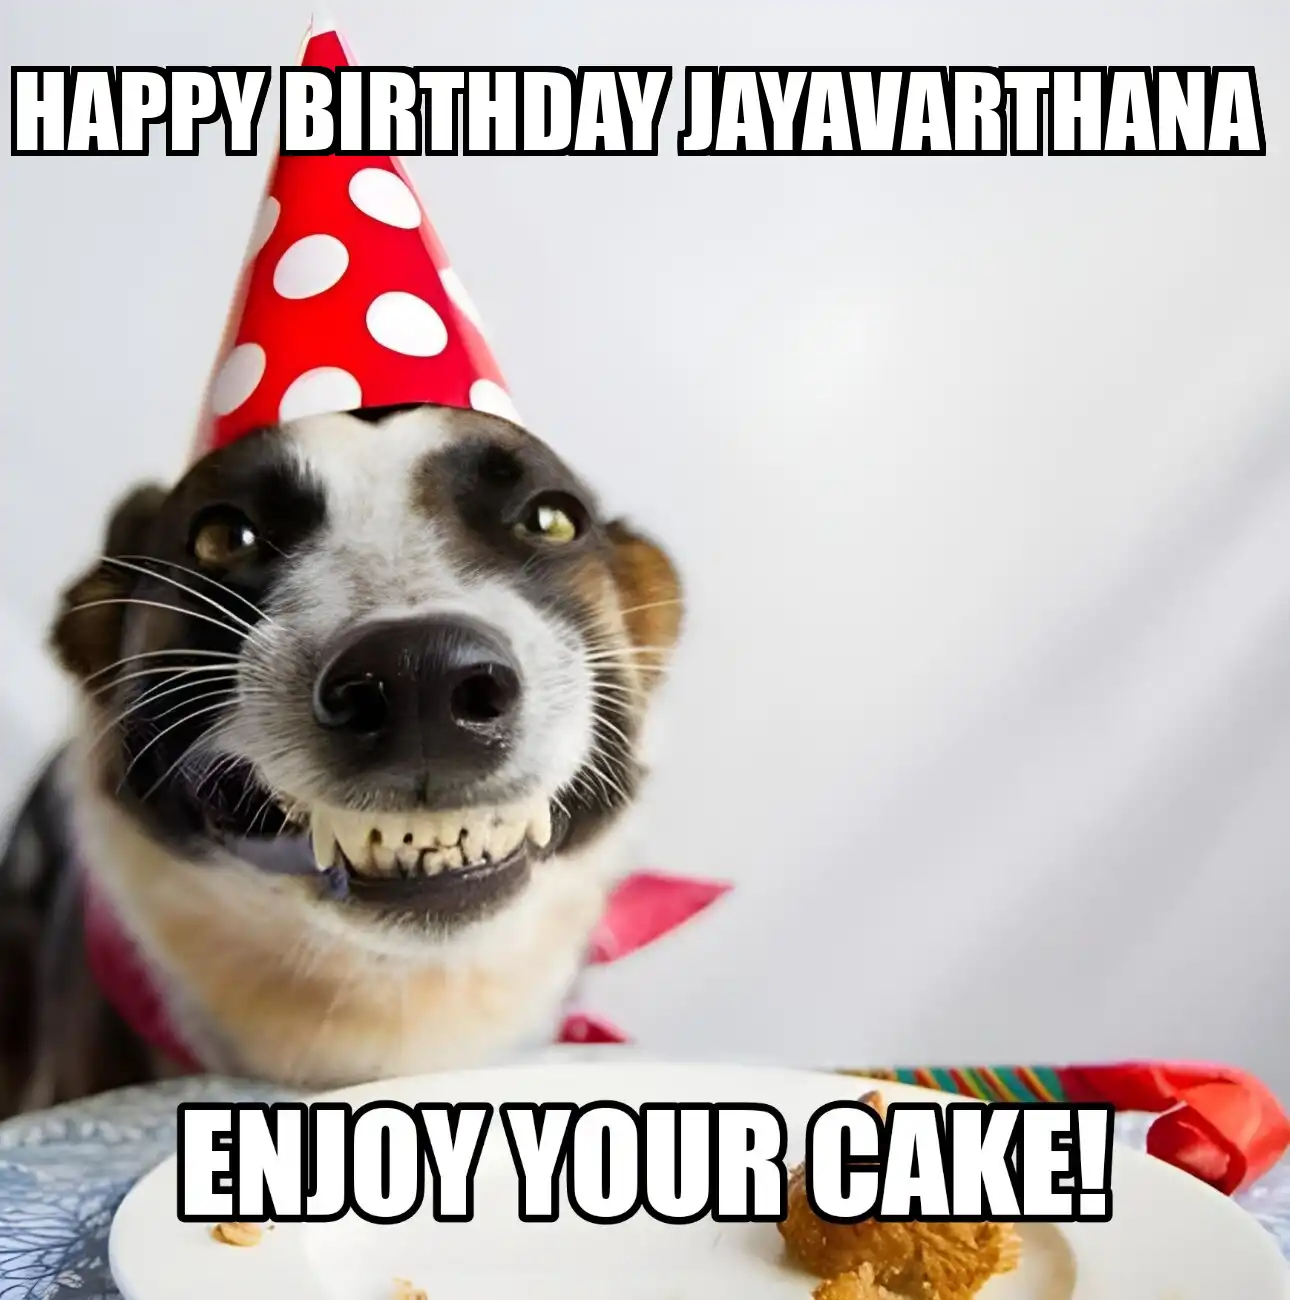 Happy Birthday Jayavarthana Enjoy Your Cake Dog Meme